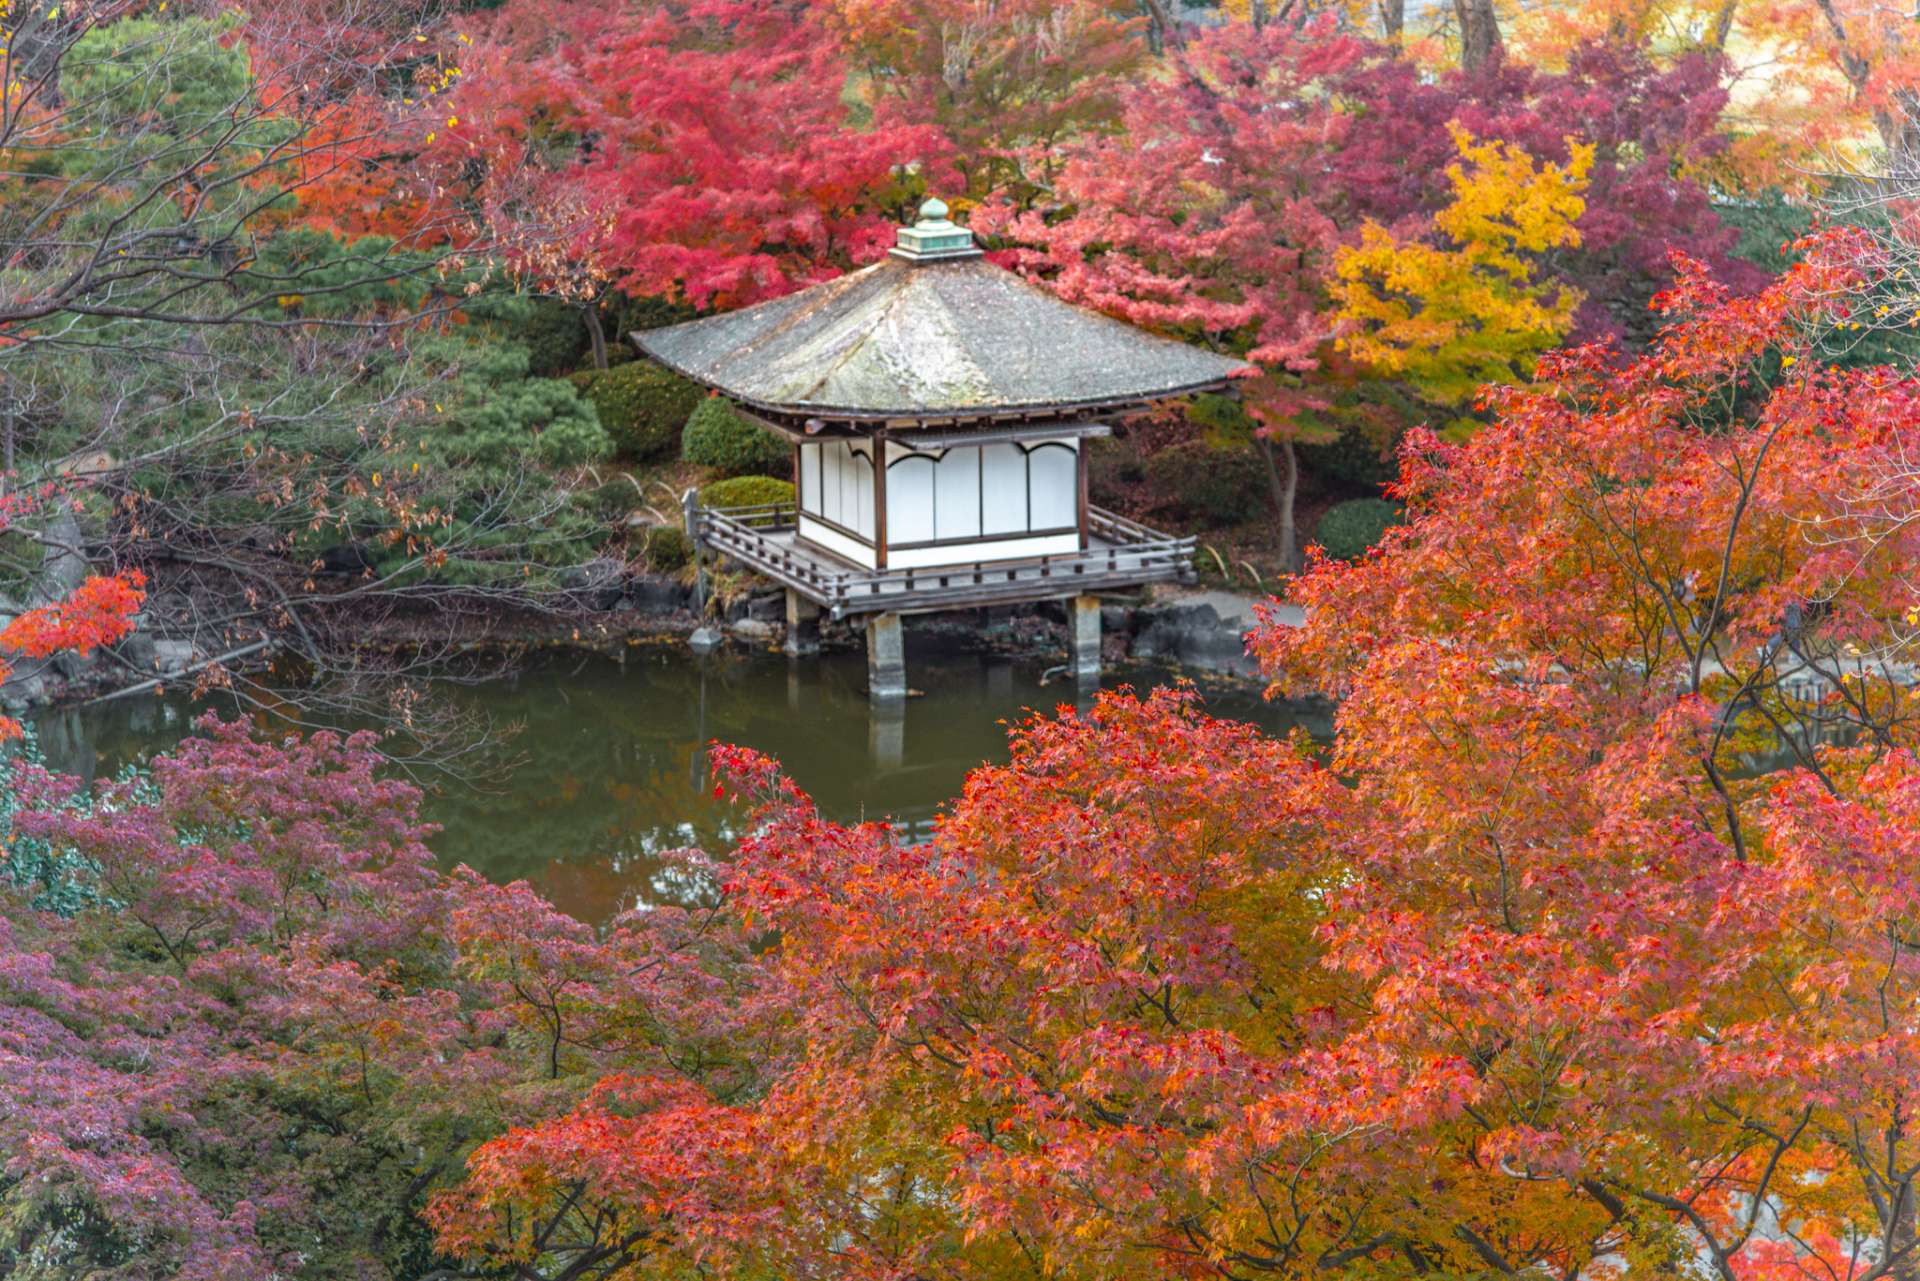 Également connu sous le nom de jardins Momijidani ("Maple Valley"), ce jardin japonais est particulièrement apprécié pour ses vues automnales.